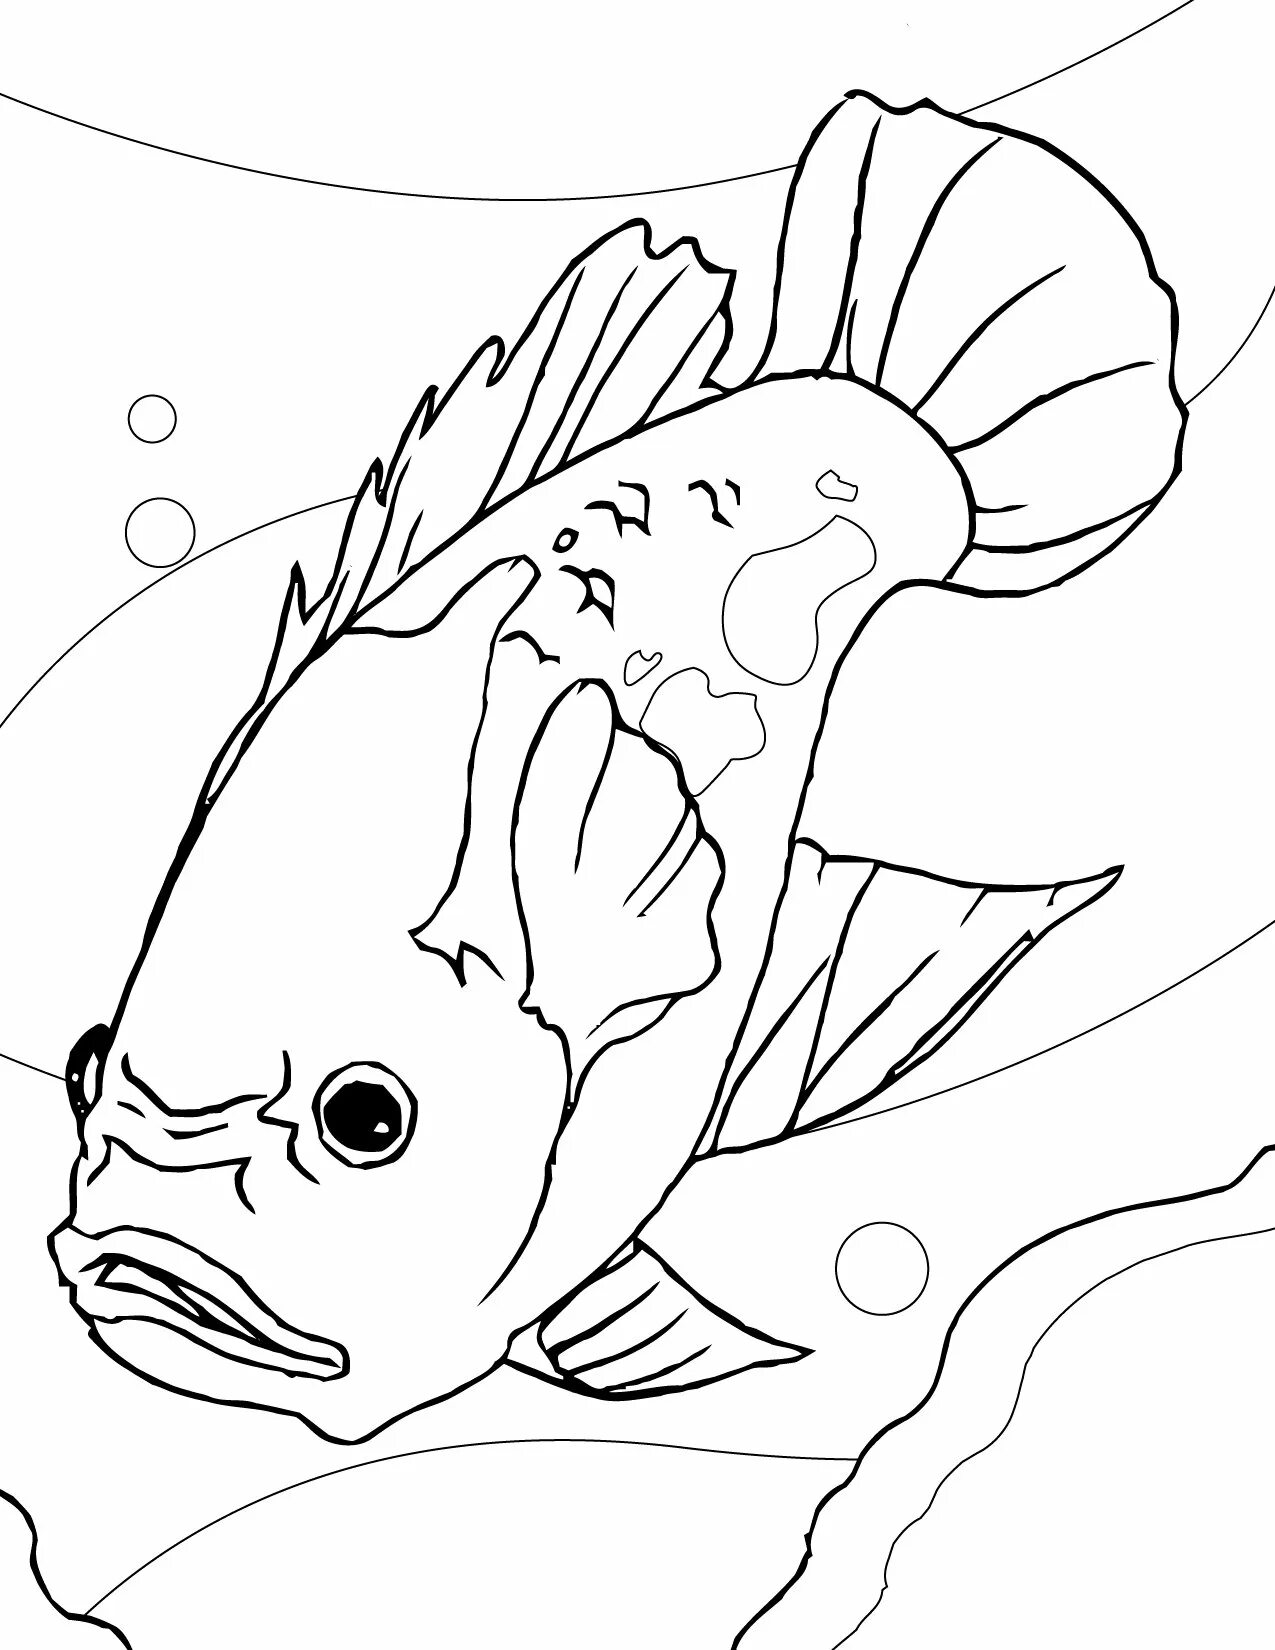 Раскраска рыбы для детей 6 лет. Скалярия аквариумная рыбка раскраска. Раскраска рыбка. Рыба раскраска для детей. Рыбка раскраска для детей.